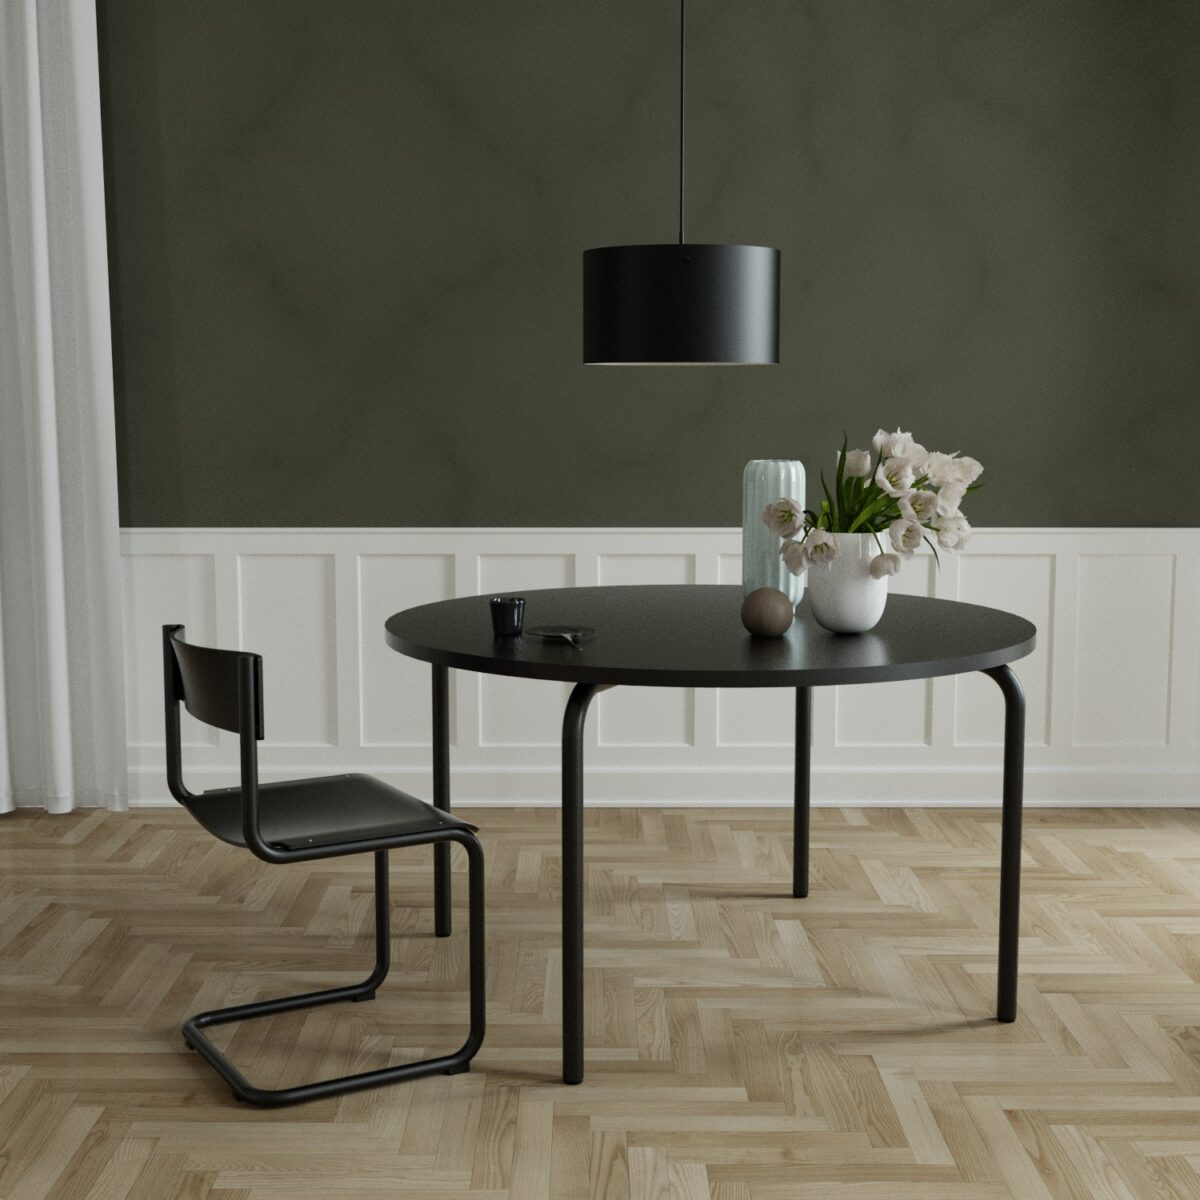 Sort bord og stol fra Anno Studio. Designet af Friis & Moltke